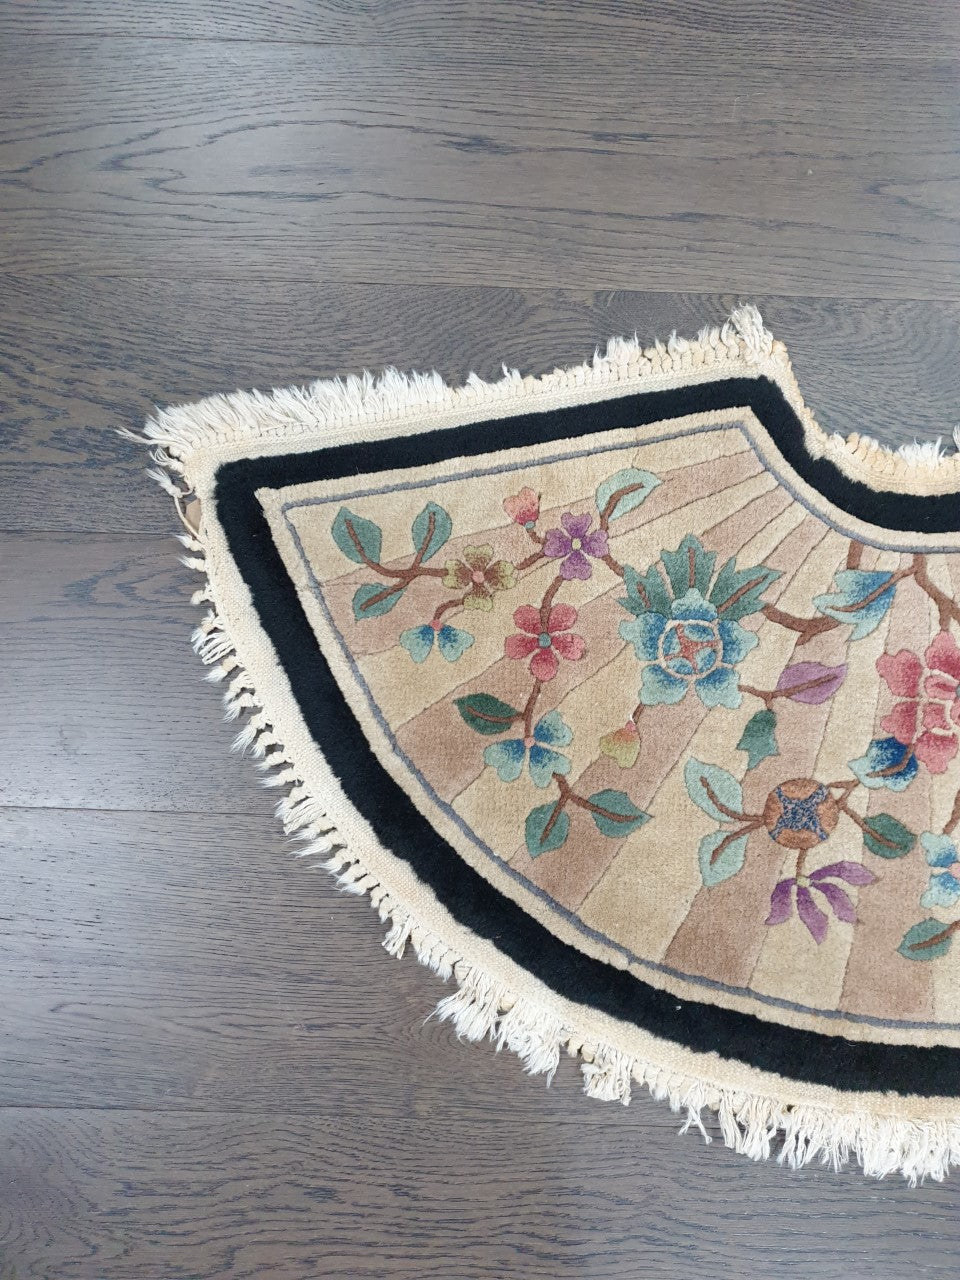 Wonderful vintage Chinese rug